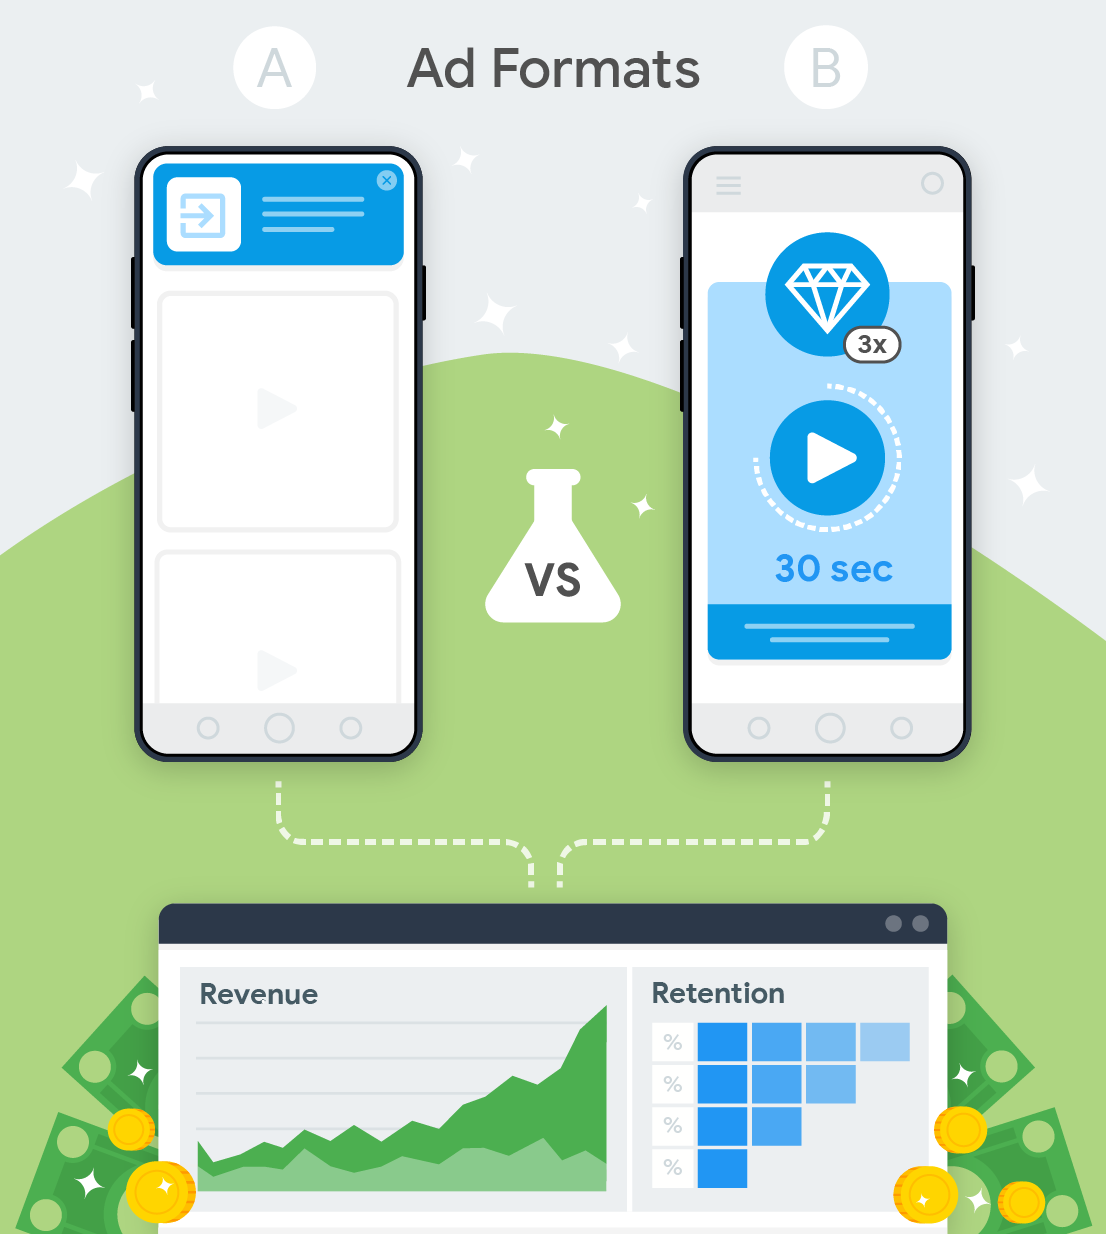 दो विज्ञापन प्रारूपों का परीक्षण और राजस्व और प्रतिधारण पर उनके प्रभाव